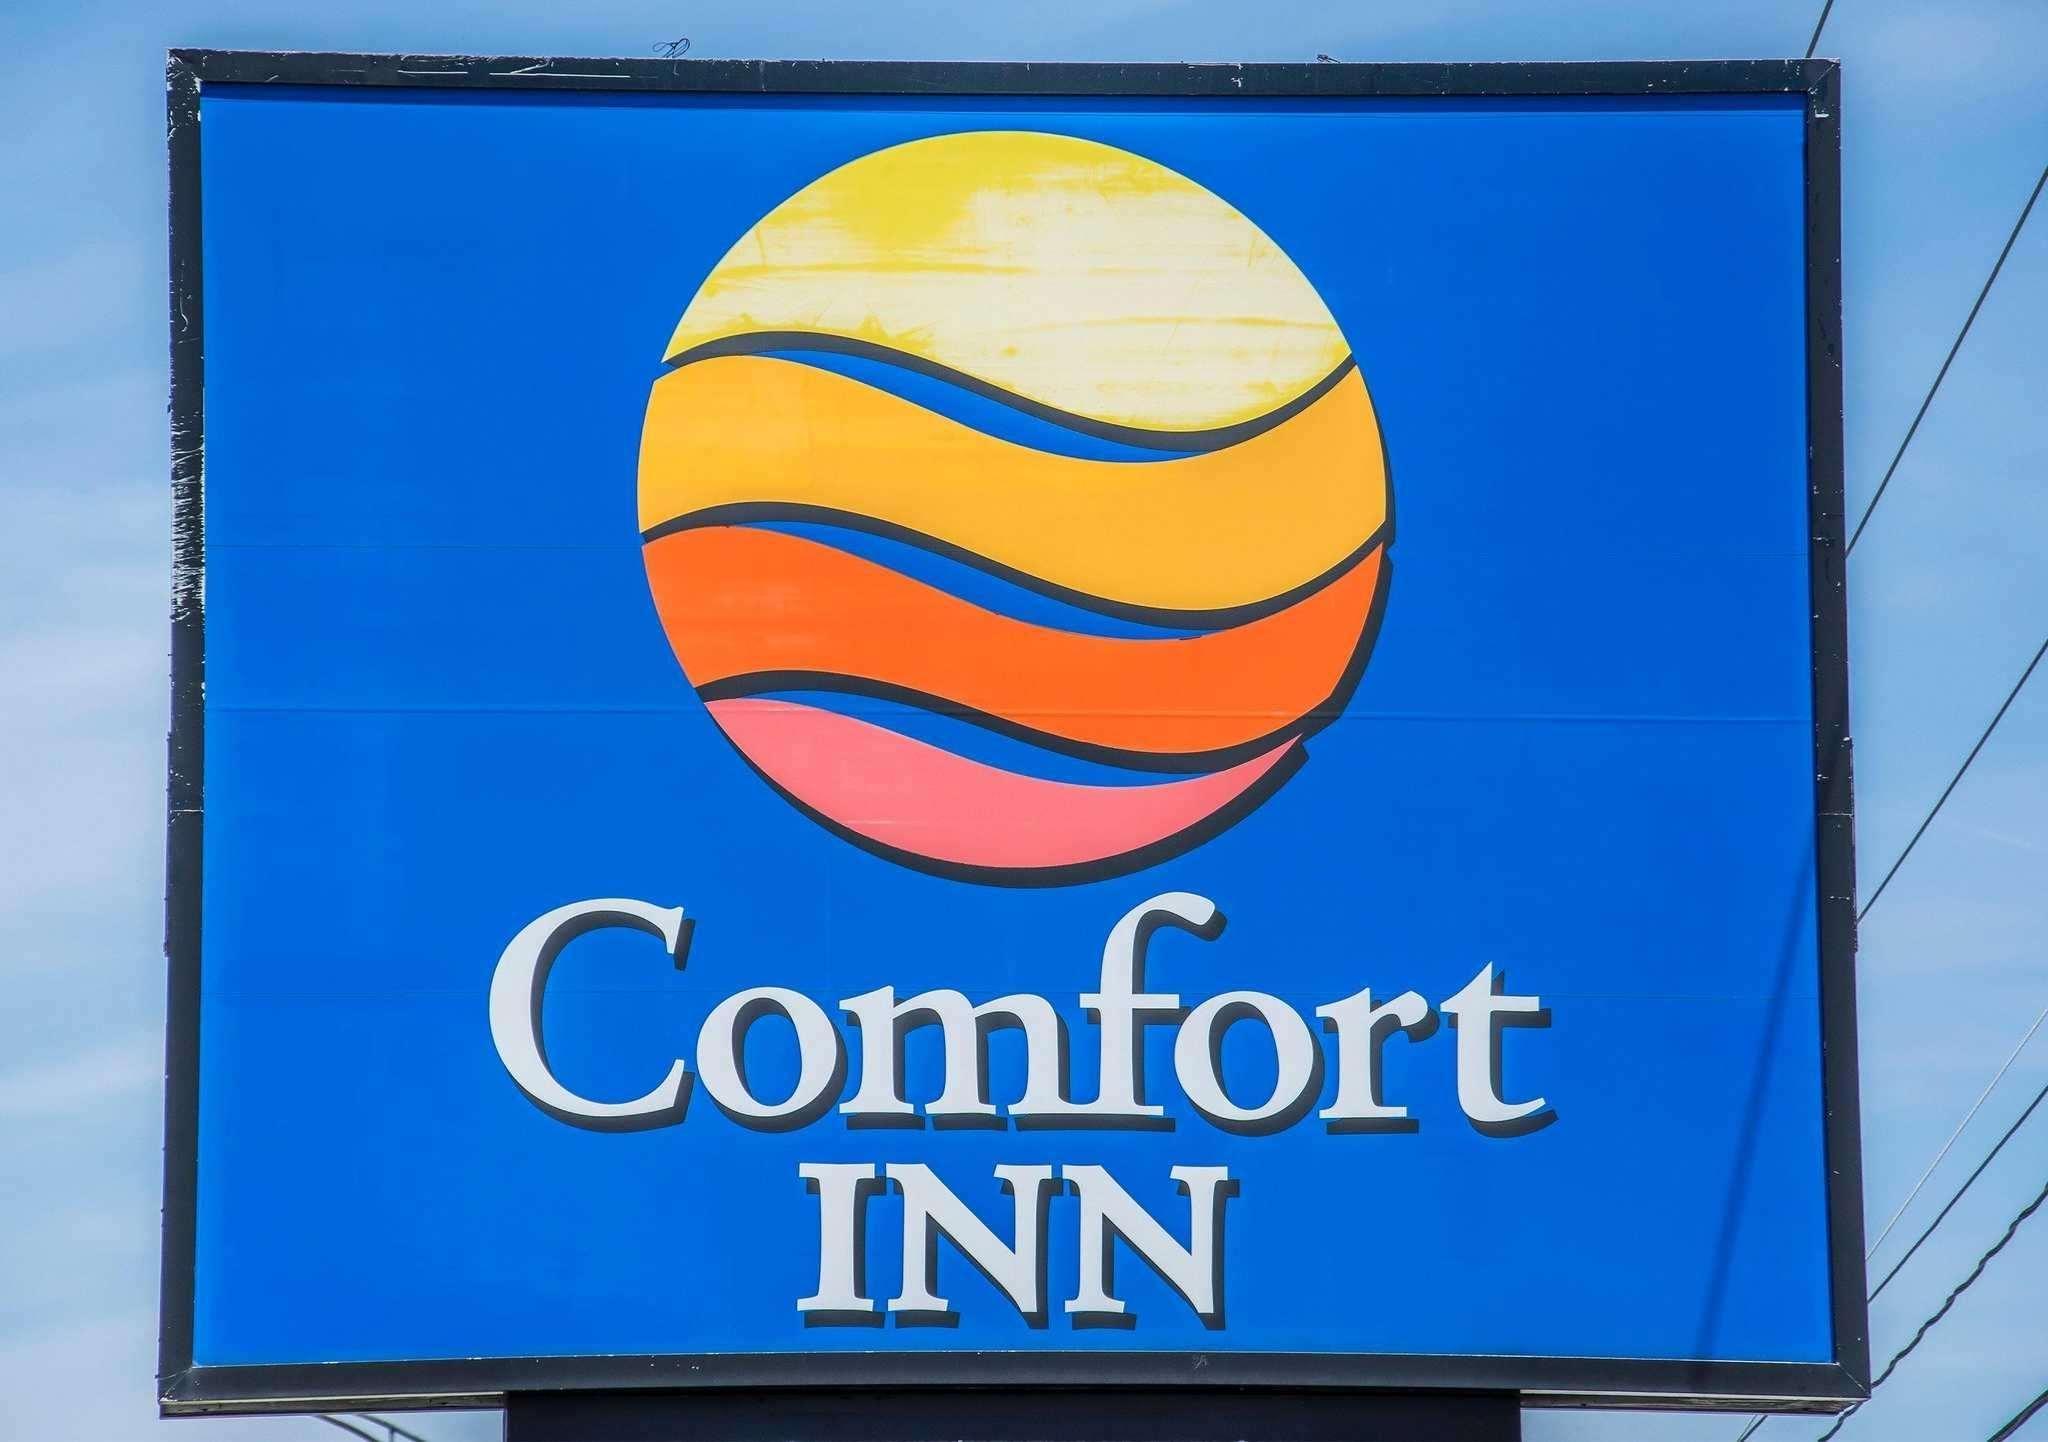 Comfort Inn 写真